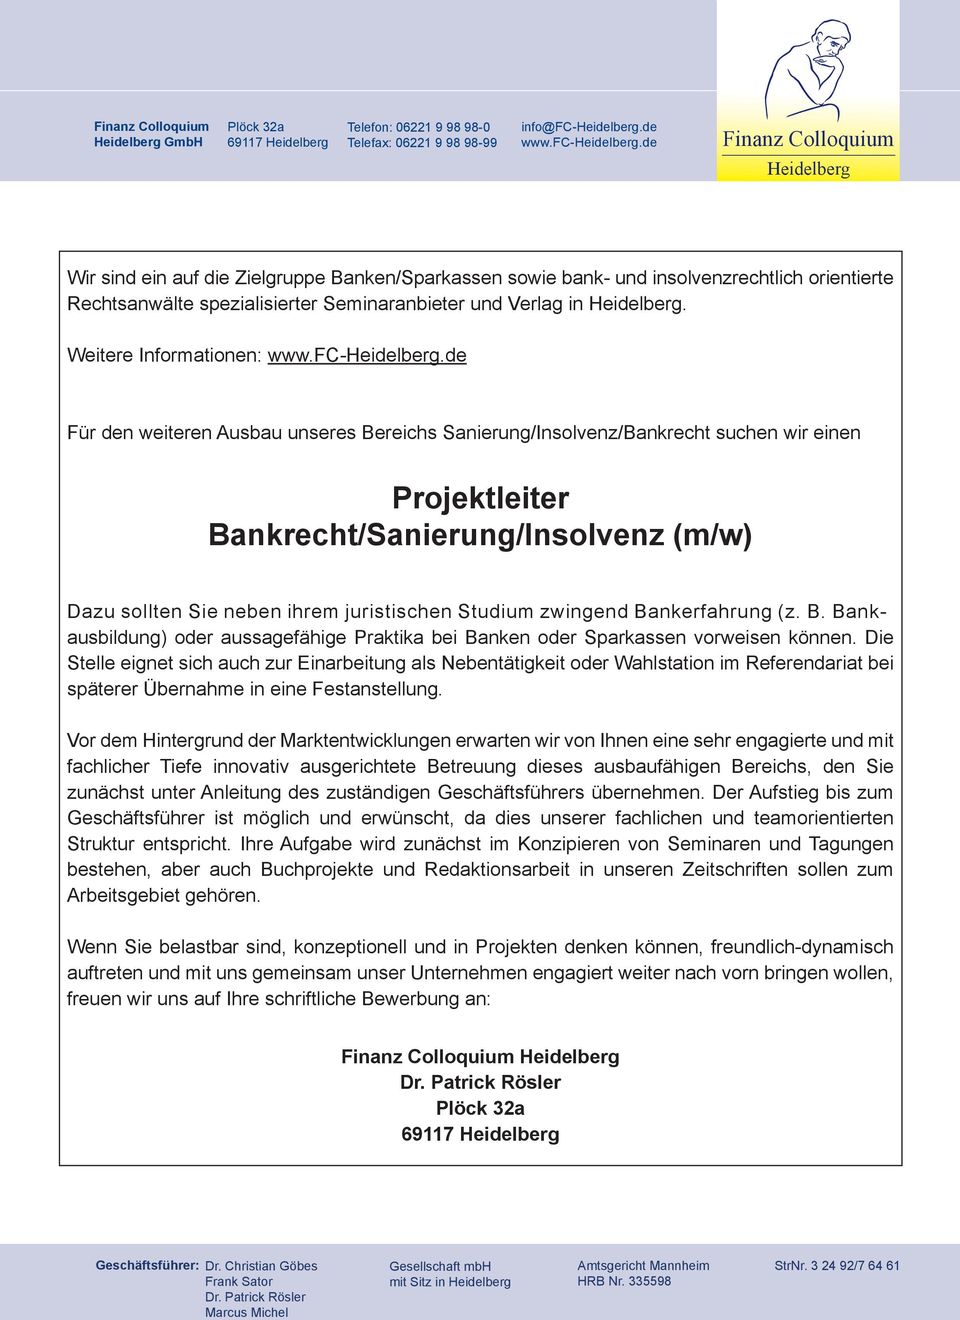 de Finanz Colloquium Heidelberg Wir sind ein auf die Zielgruppe Banken/Sparkassen sowie bank- und insolvenzrechtlich orientierte Rechtsanwälte spezialisierter Seminaranbieter und Verlag in Heidelberg.